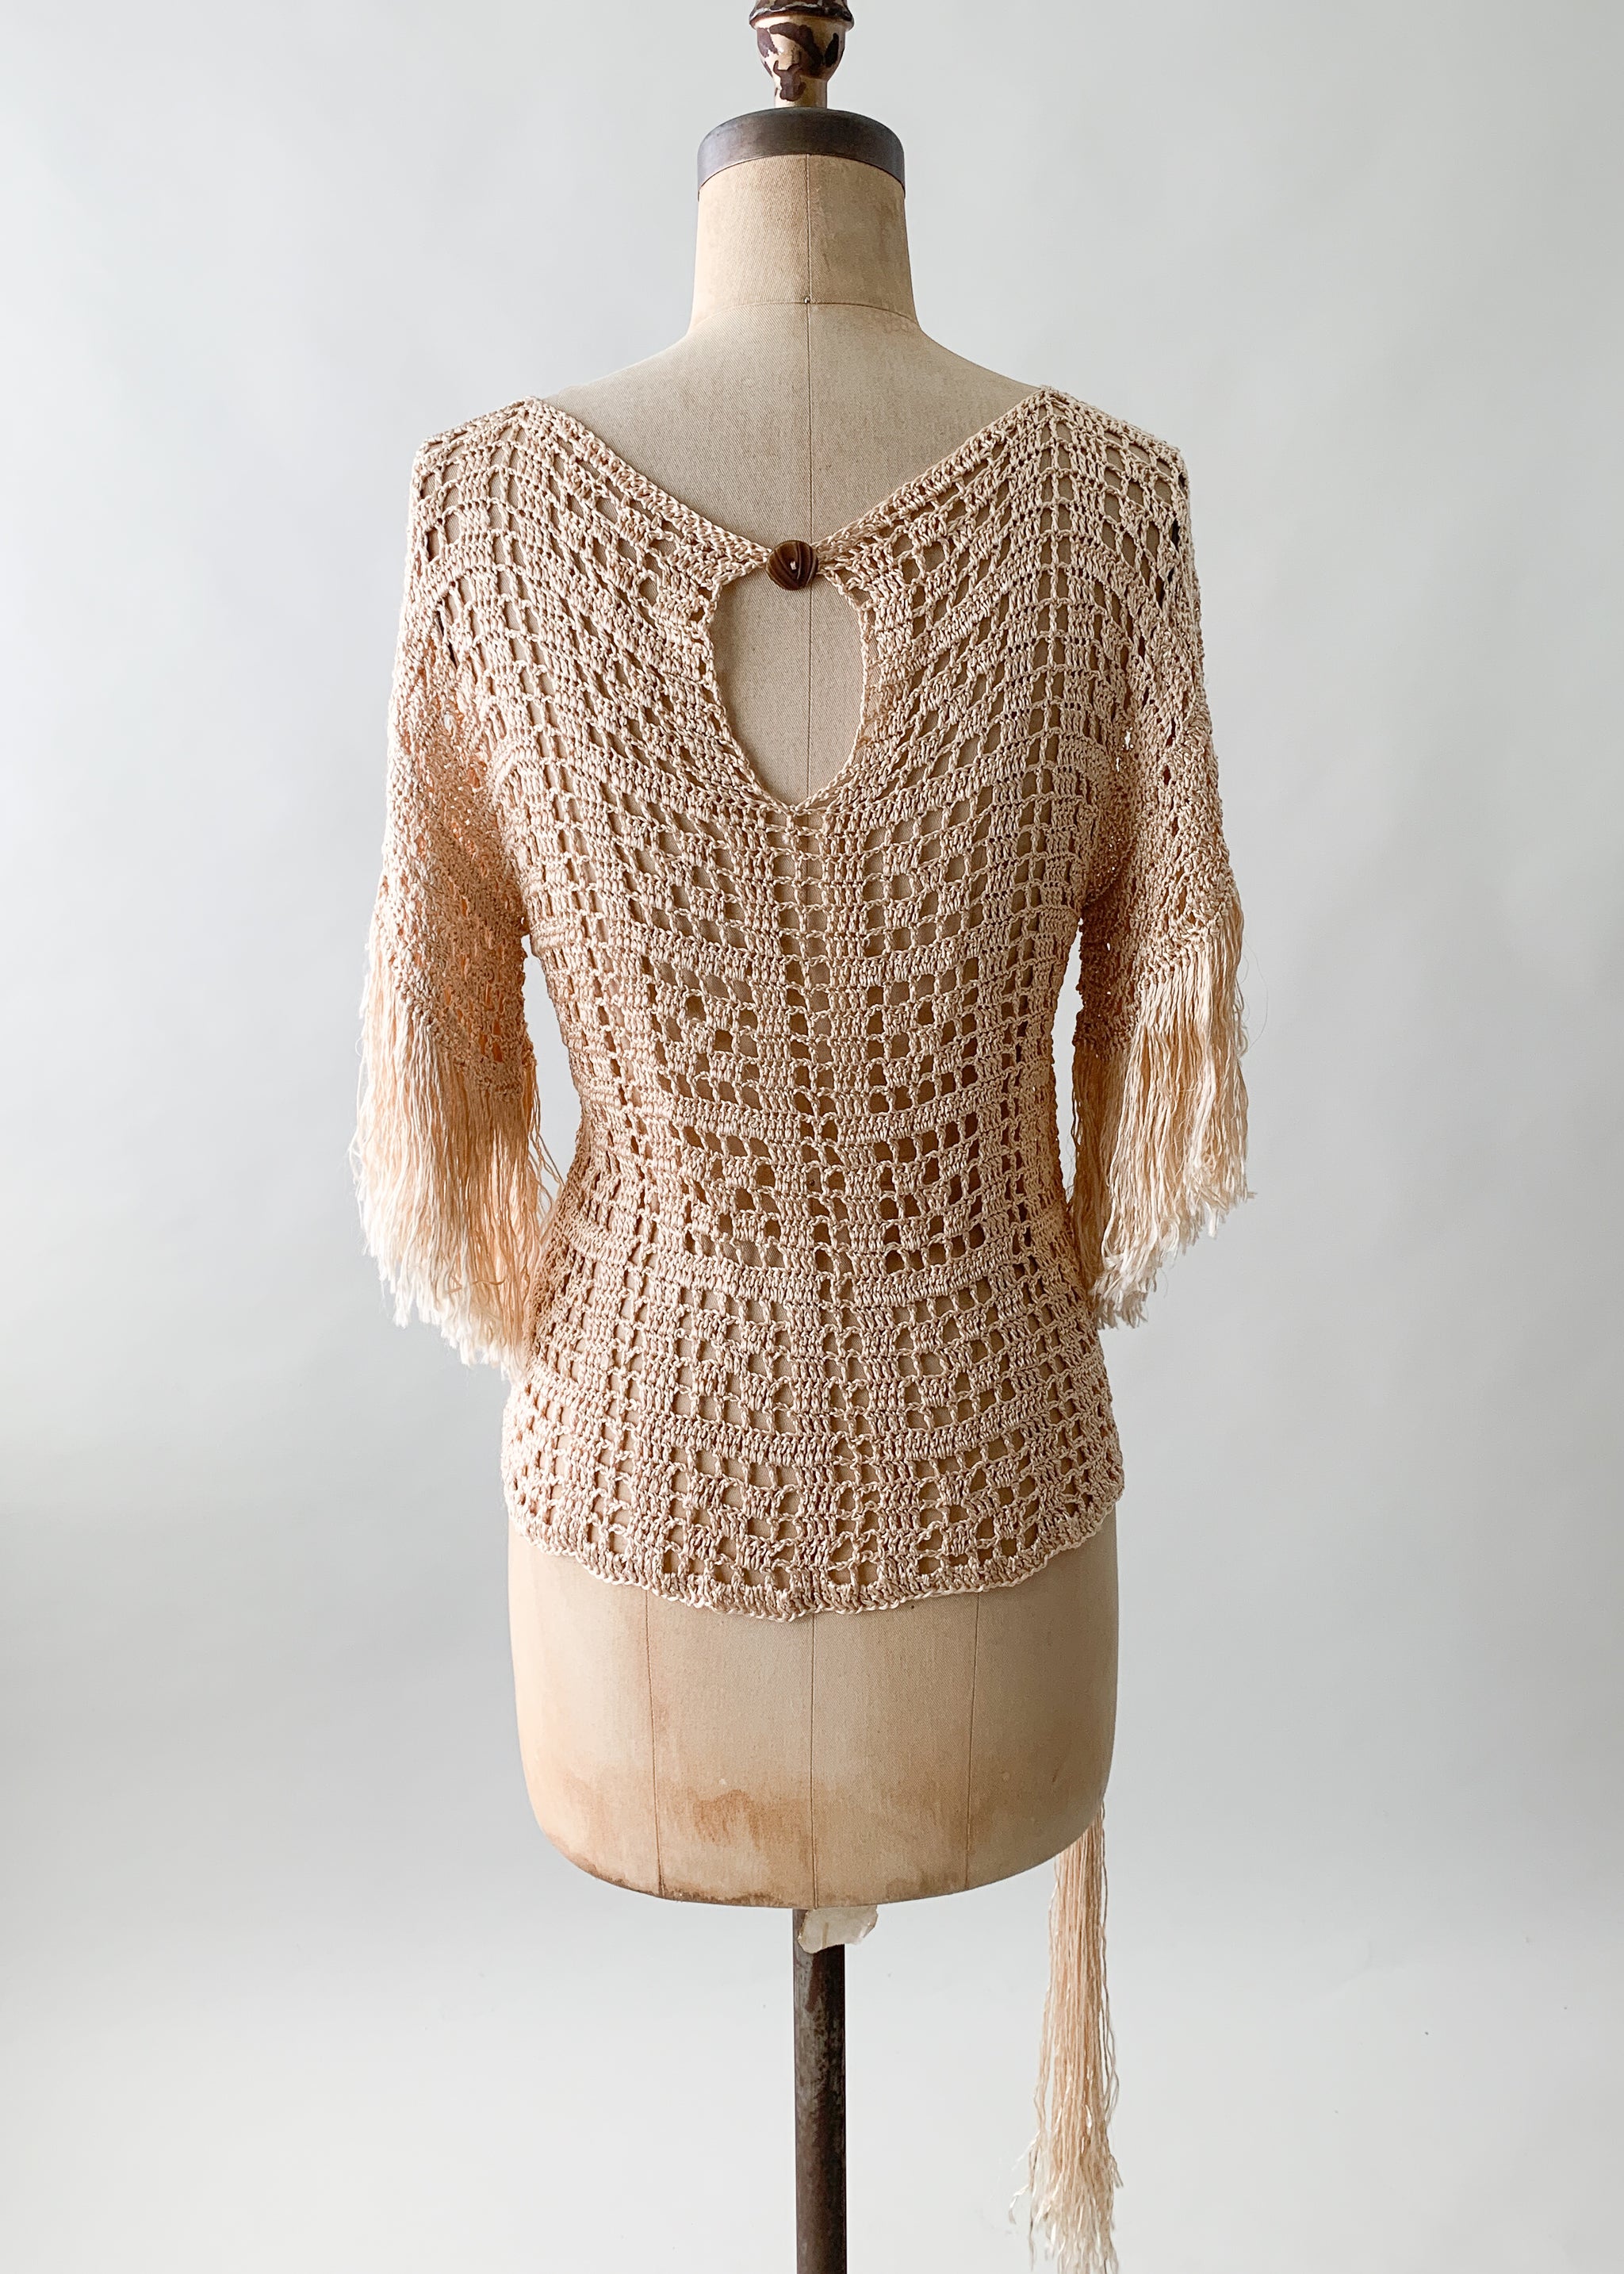 Vintage 1920s Fringed Knit Top